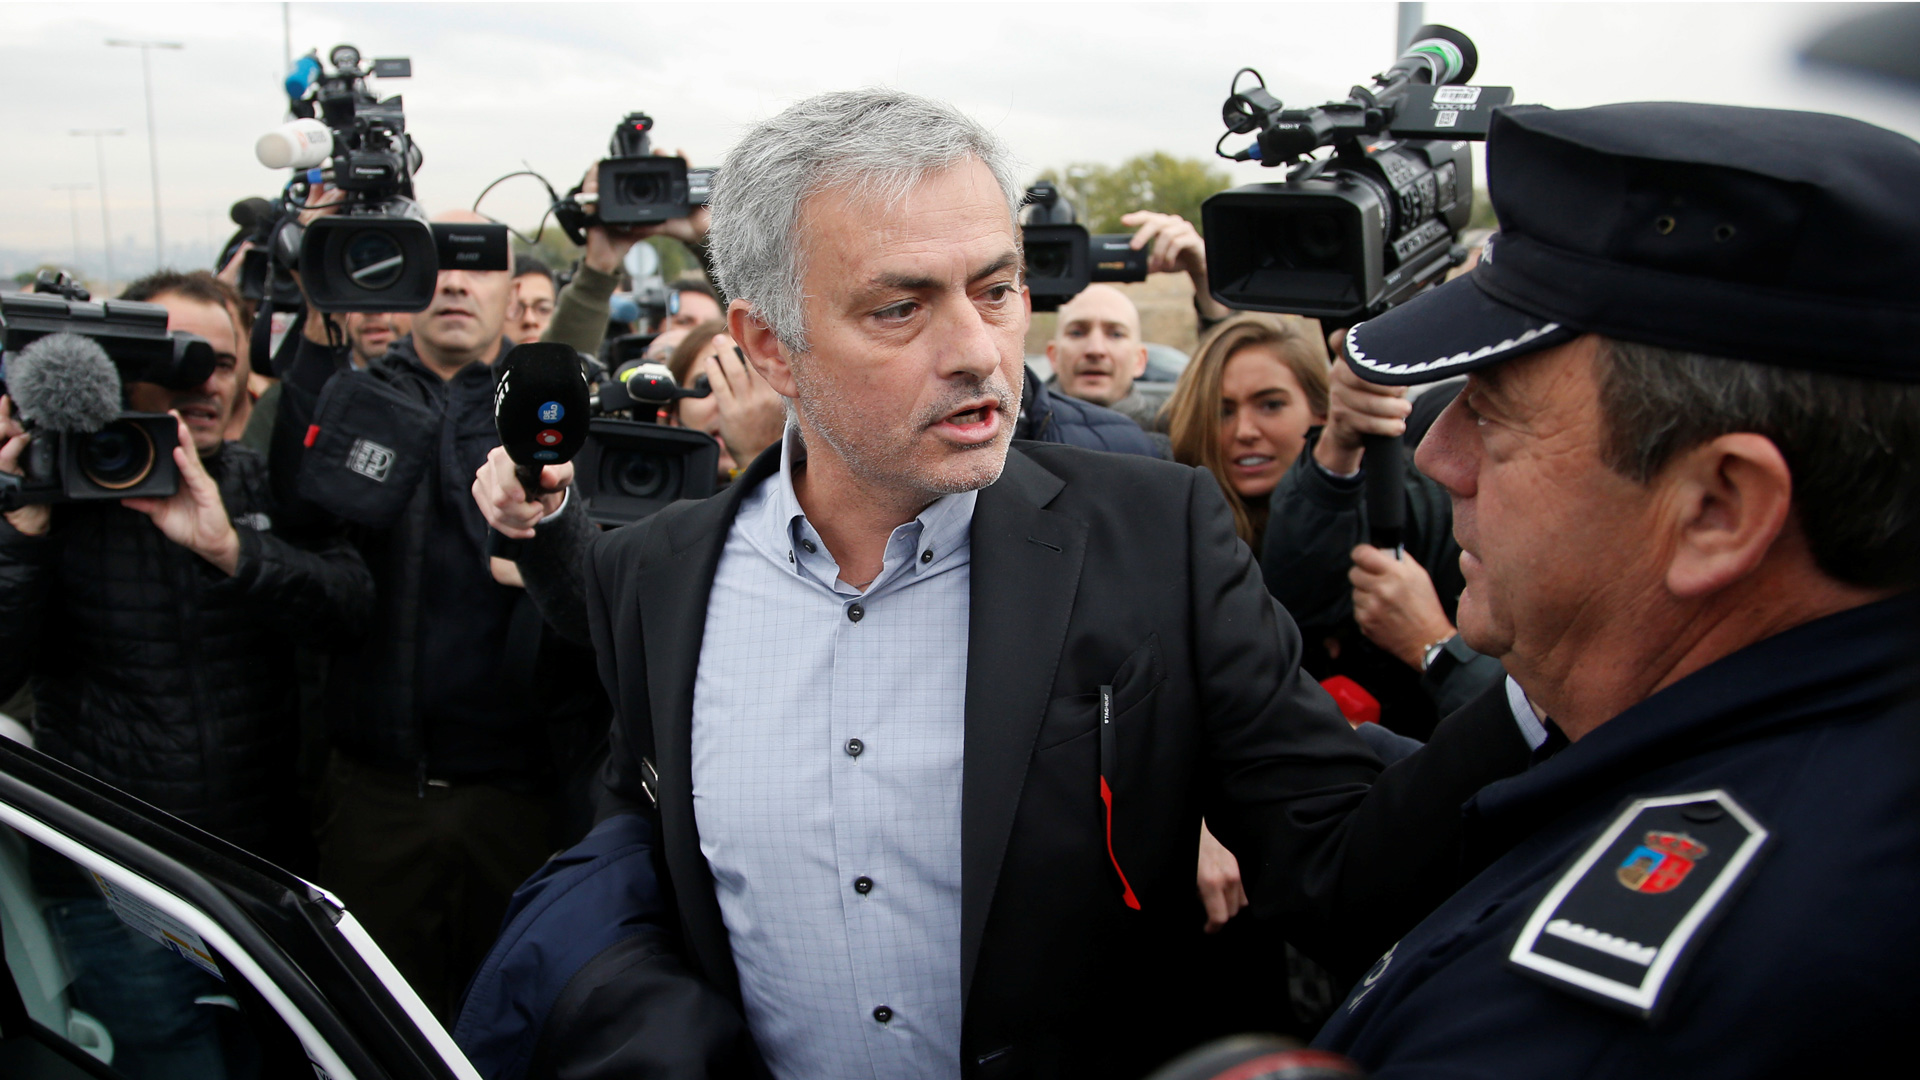 José Mourinho comparece ante el juez por defraudar 3,3 millones de euros